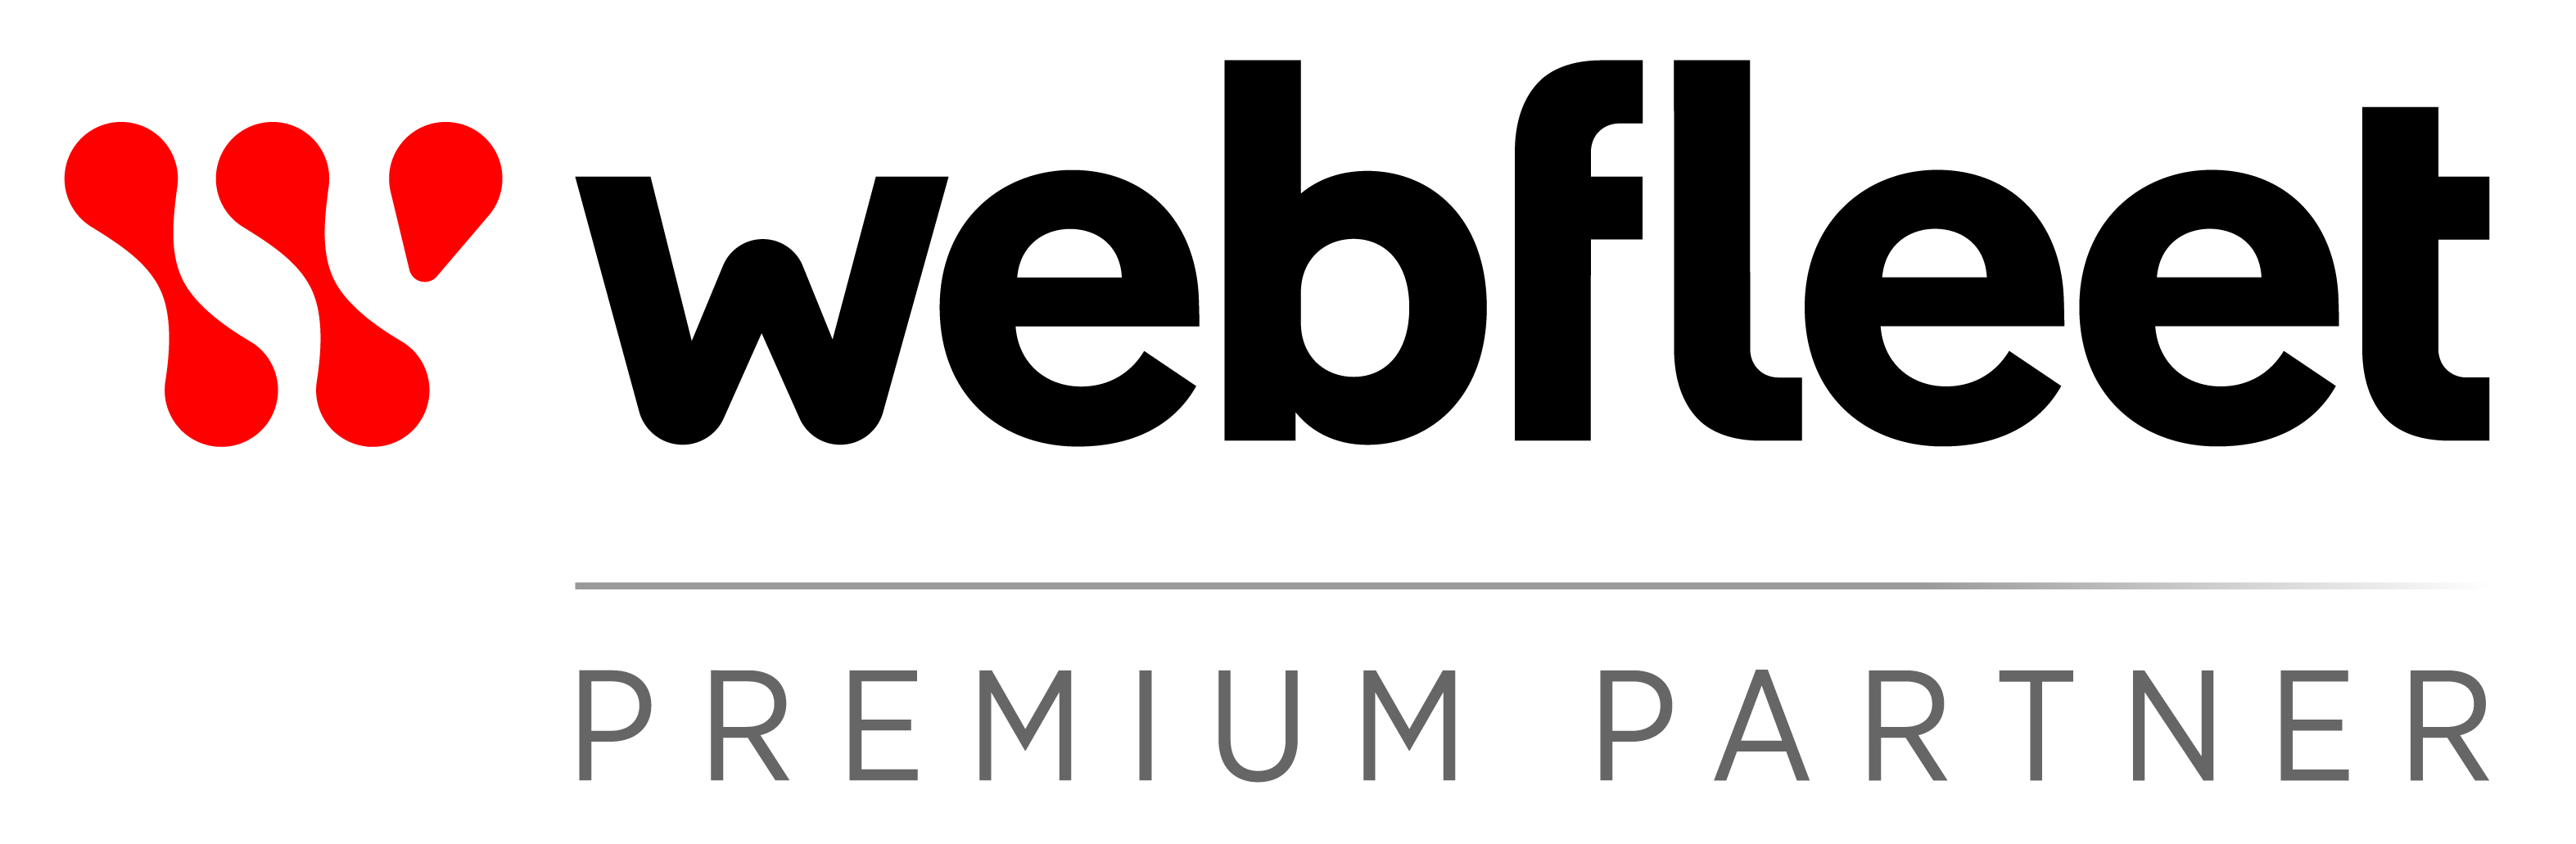 Partner Brand Logo